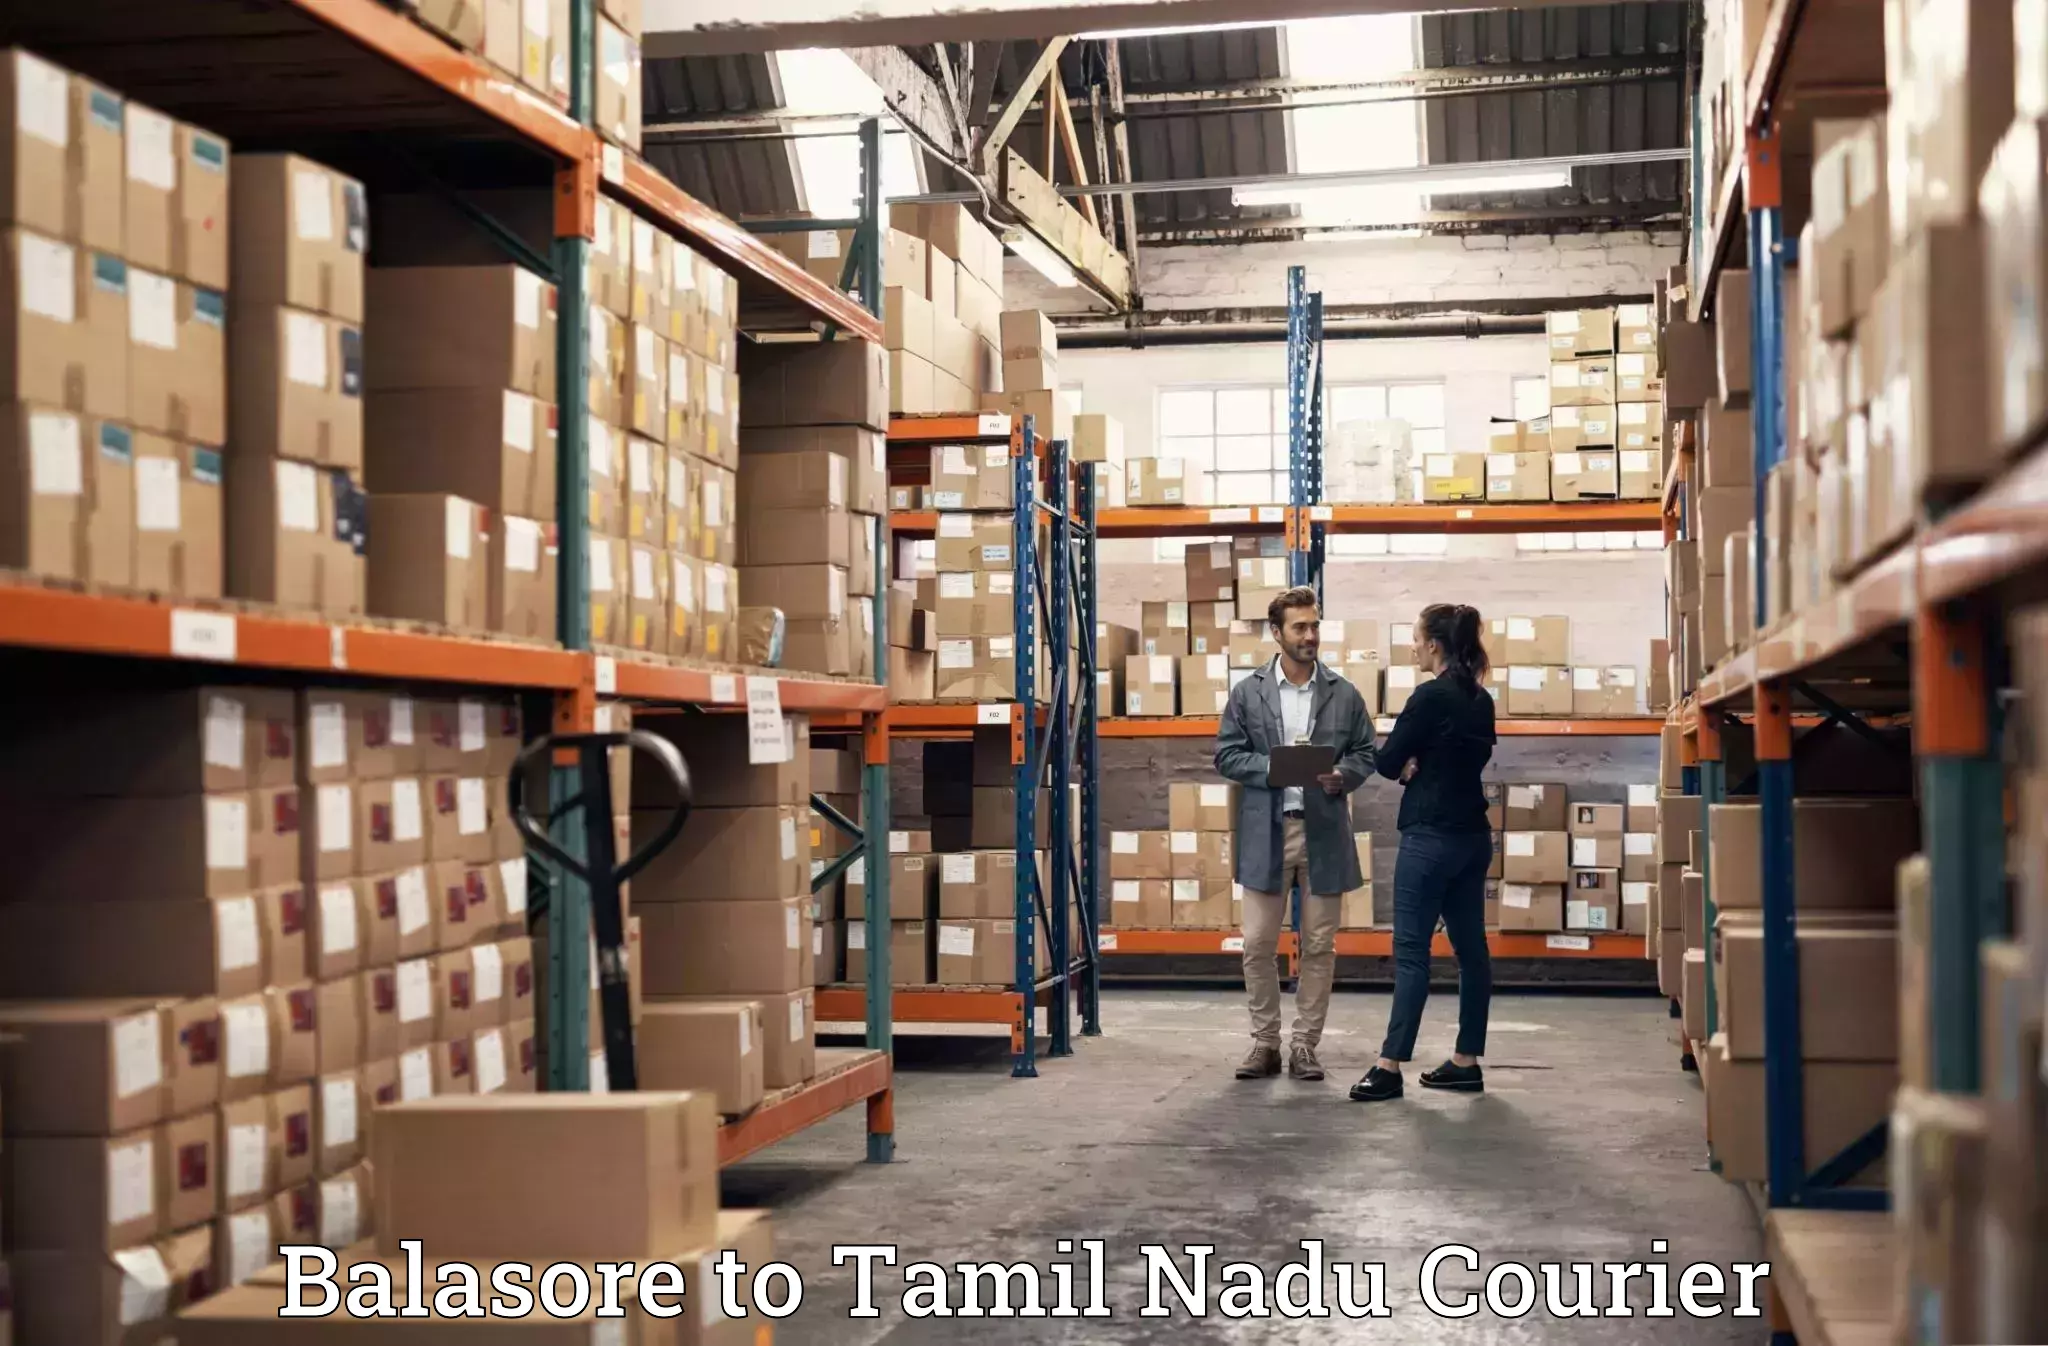 Moving and packing experts Balasore to Karaikudi